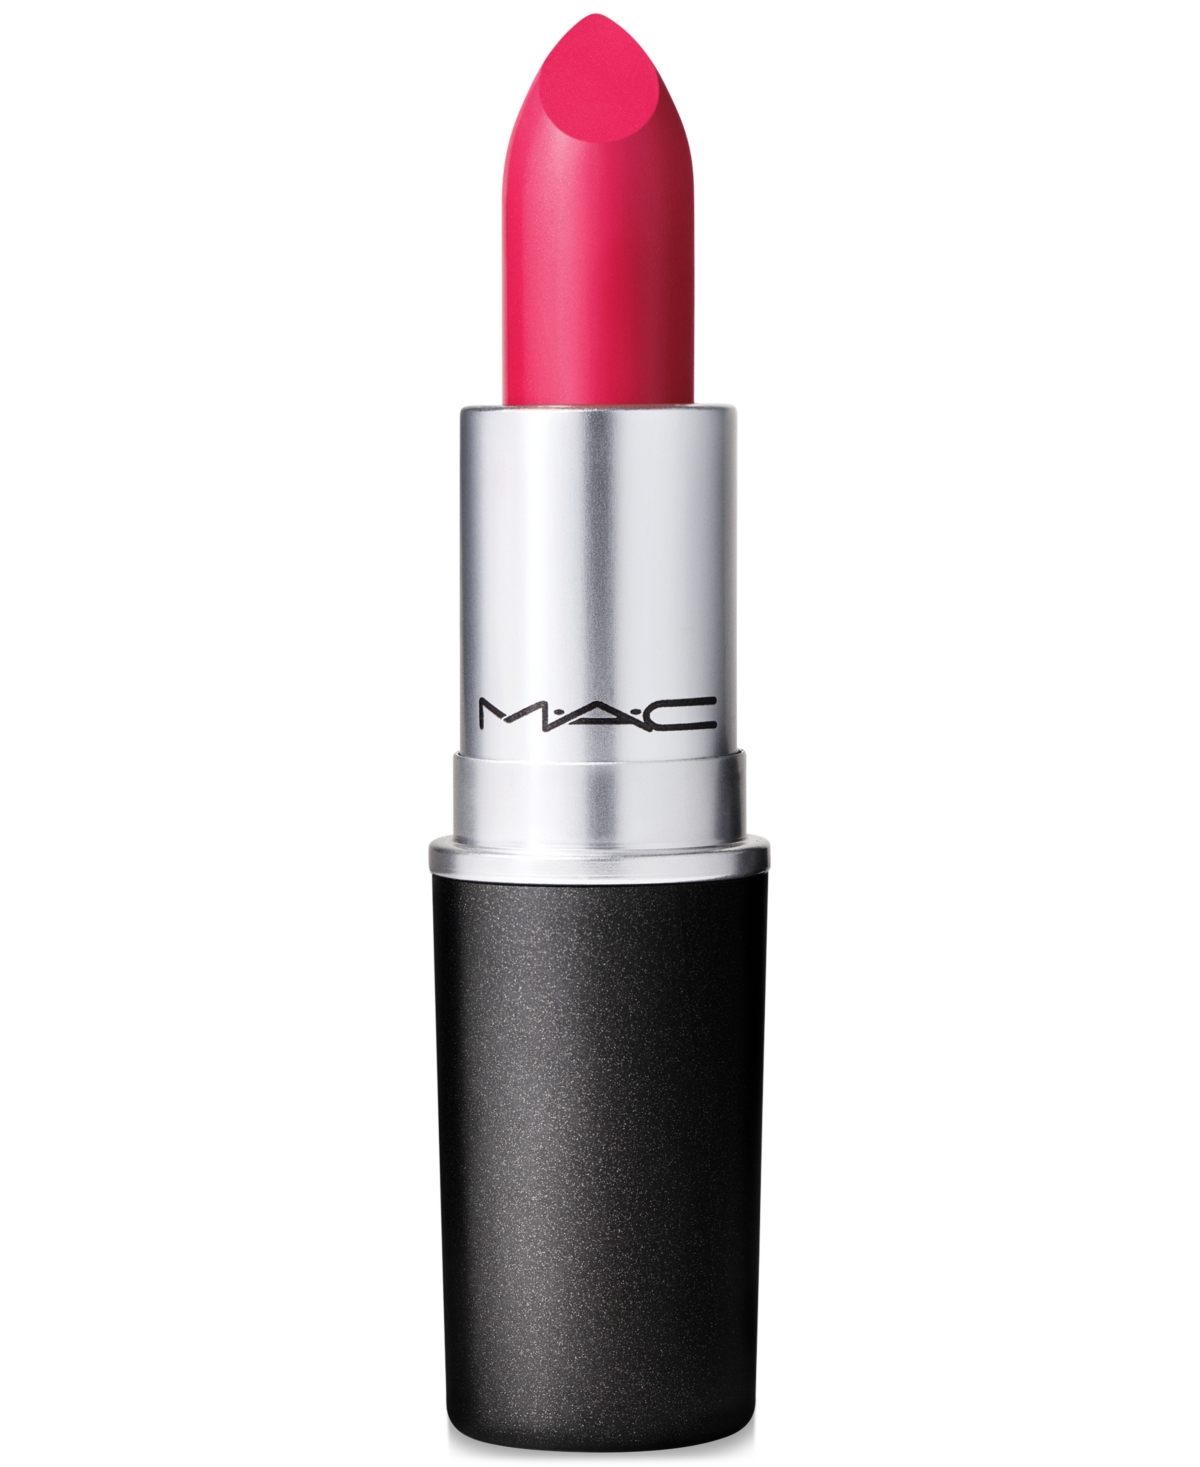 Mac Re-think Pink Amplified Lipstick In Dallas (bright Fuchsia)